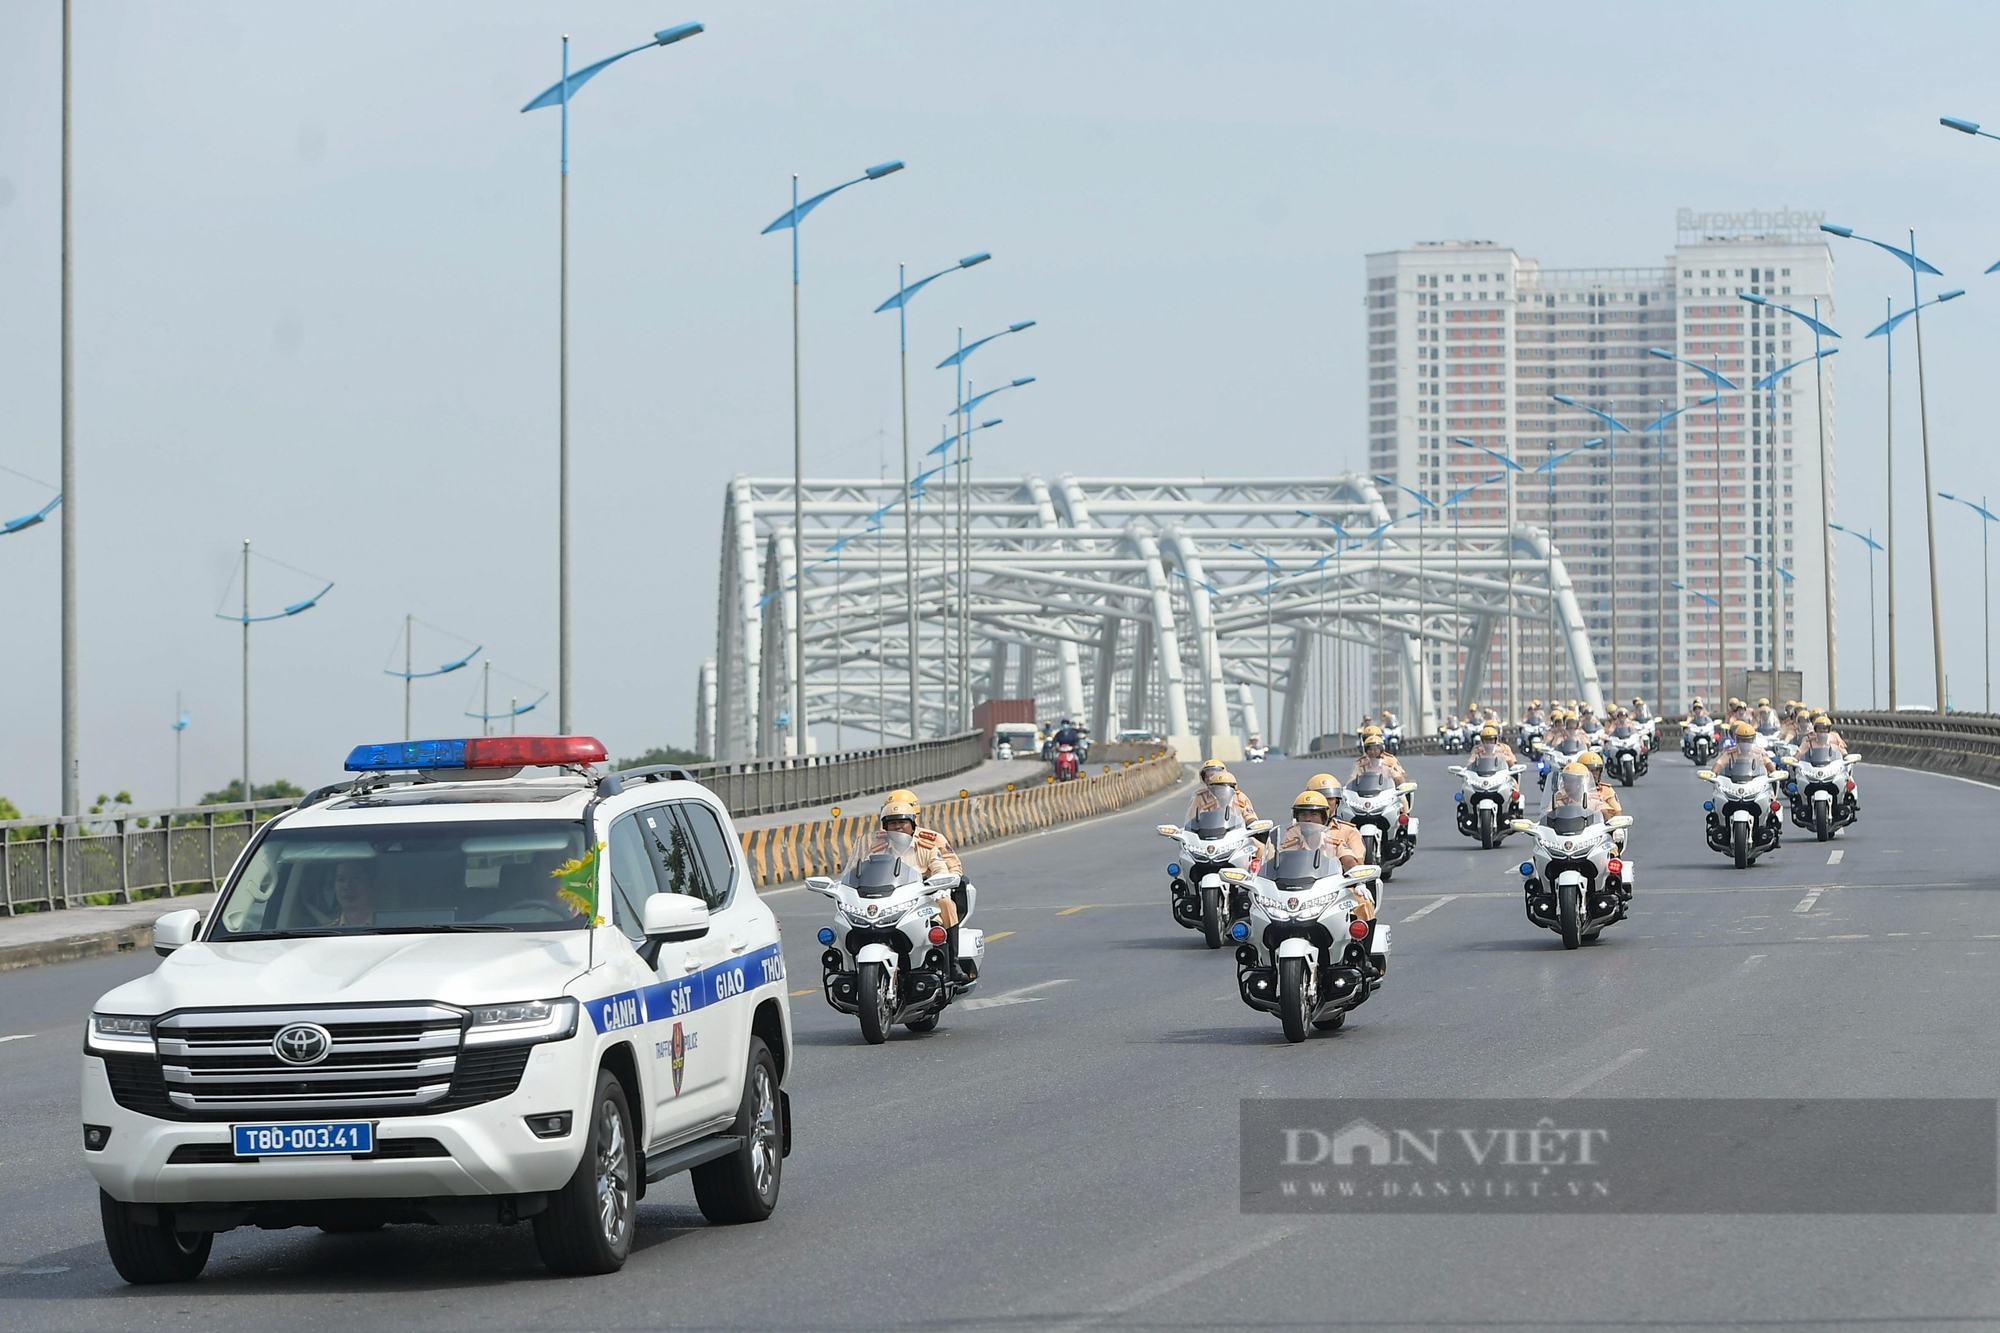 Ngắm dàn siêu xe mô tô tiền tỷ của CSGT diễu hành trên đường phố Hà Nội - Ảnh 4.